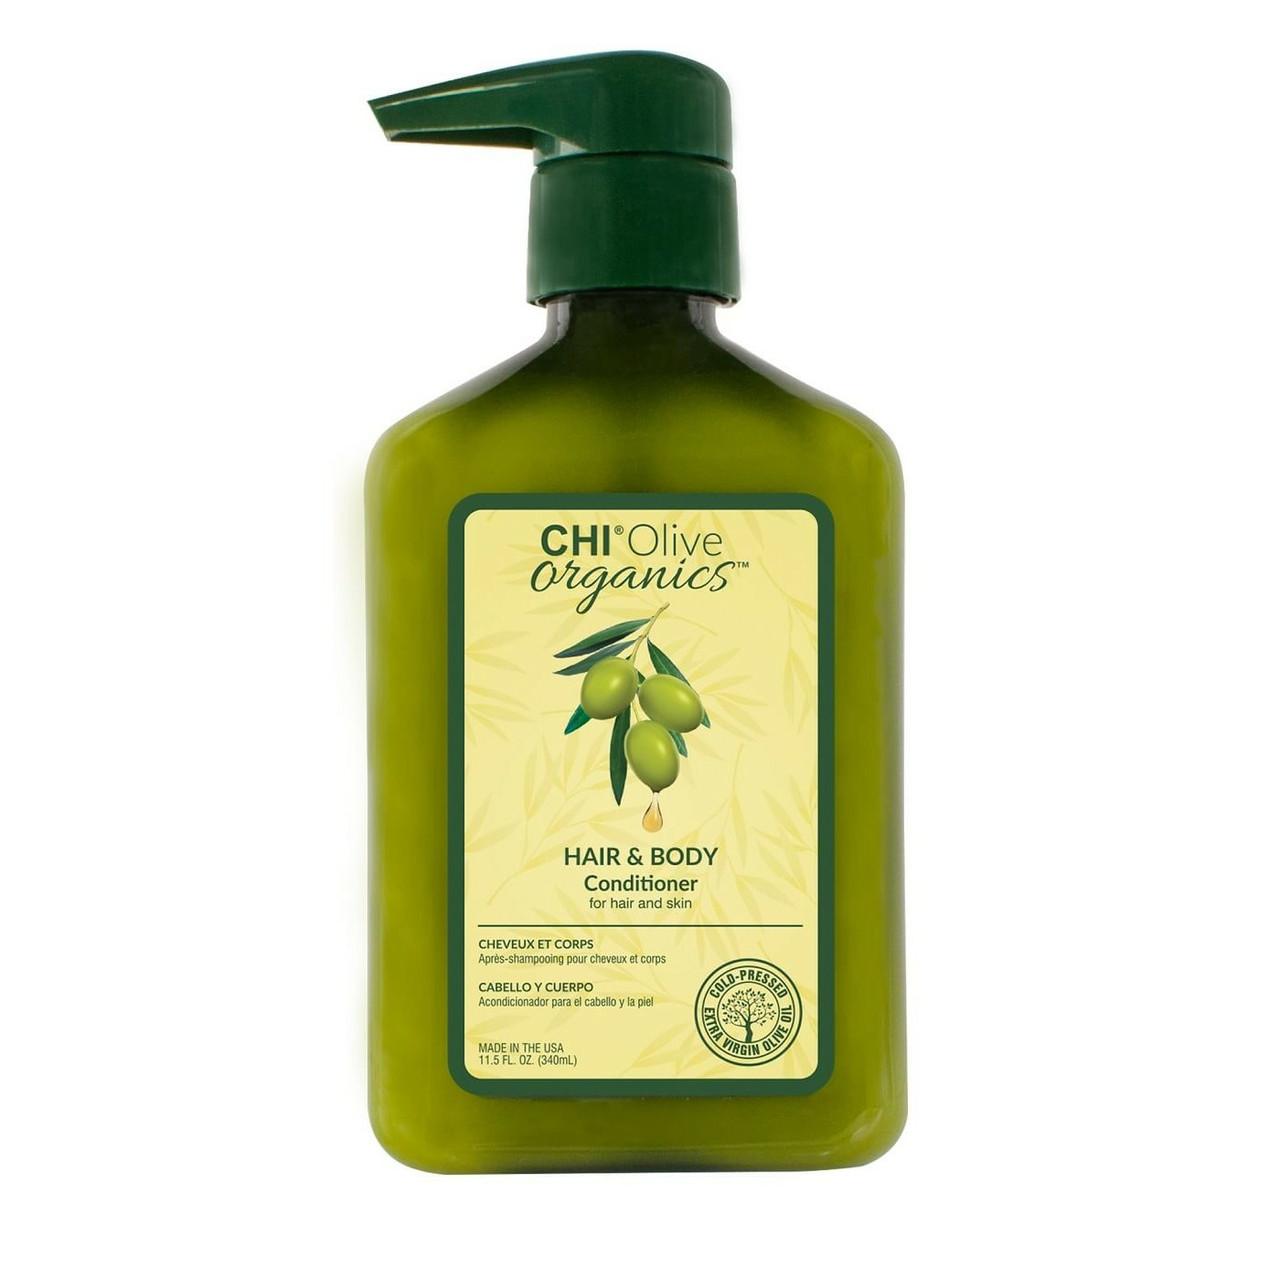 Кондиционер для волос и тела с маслом оливы CHI OLIVE ORGANICS Hair & Body Conditioner, 340 ml